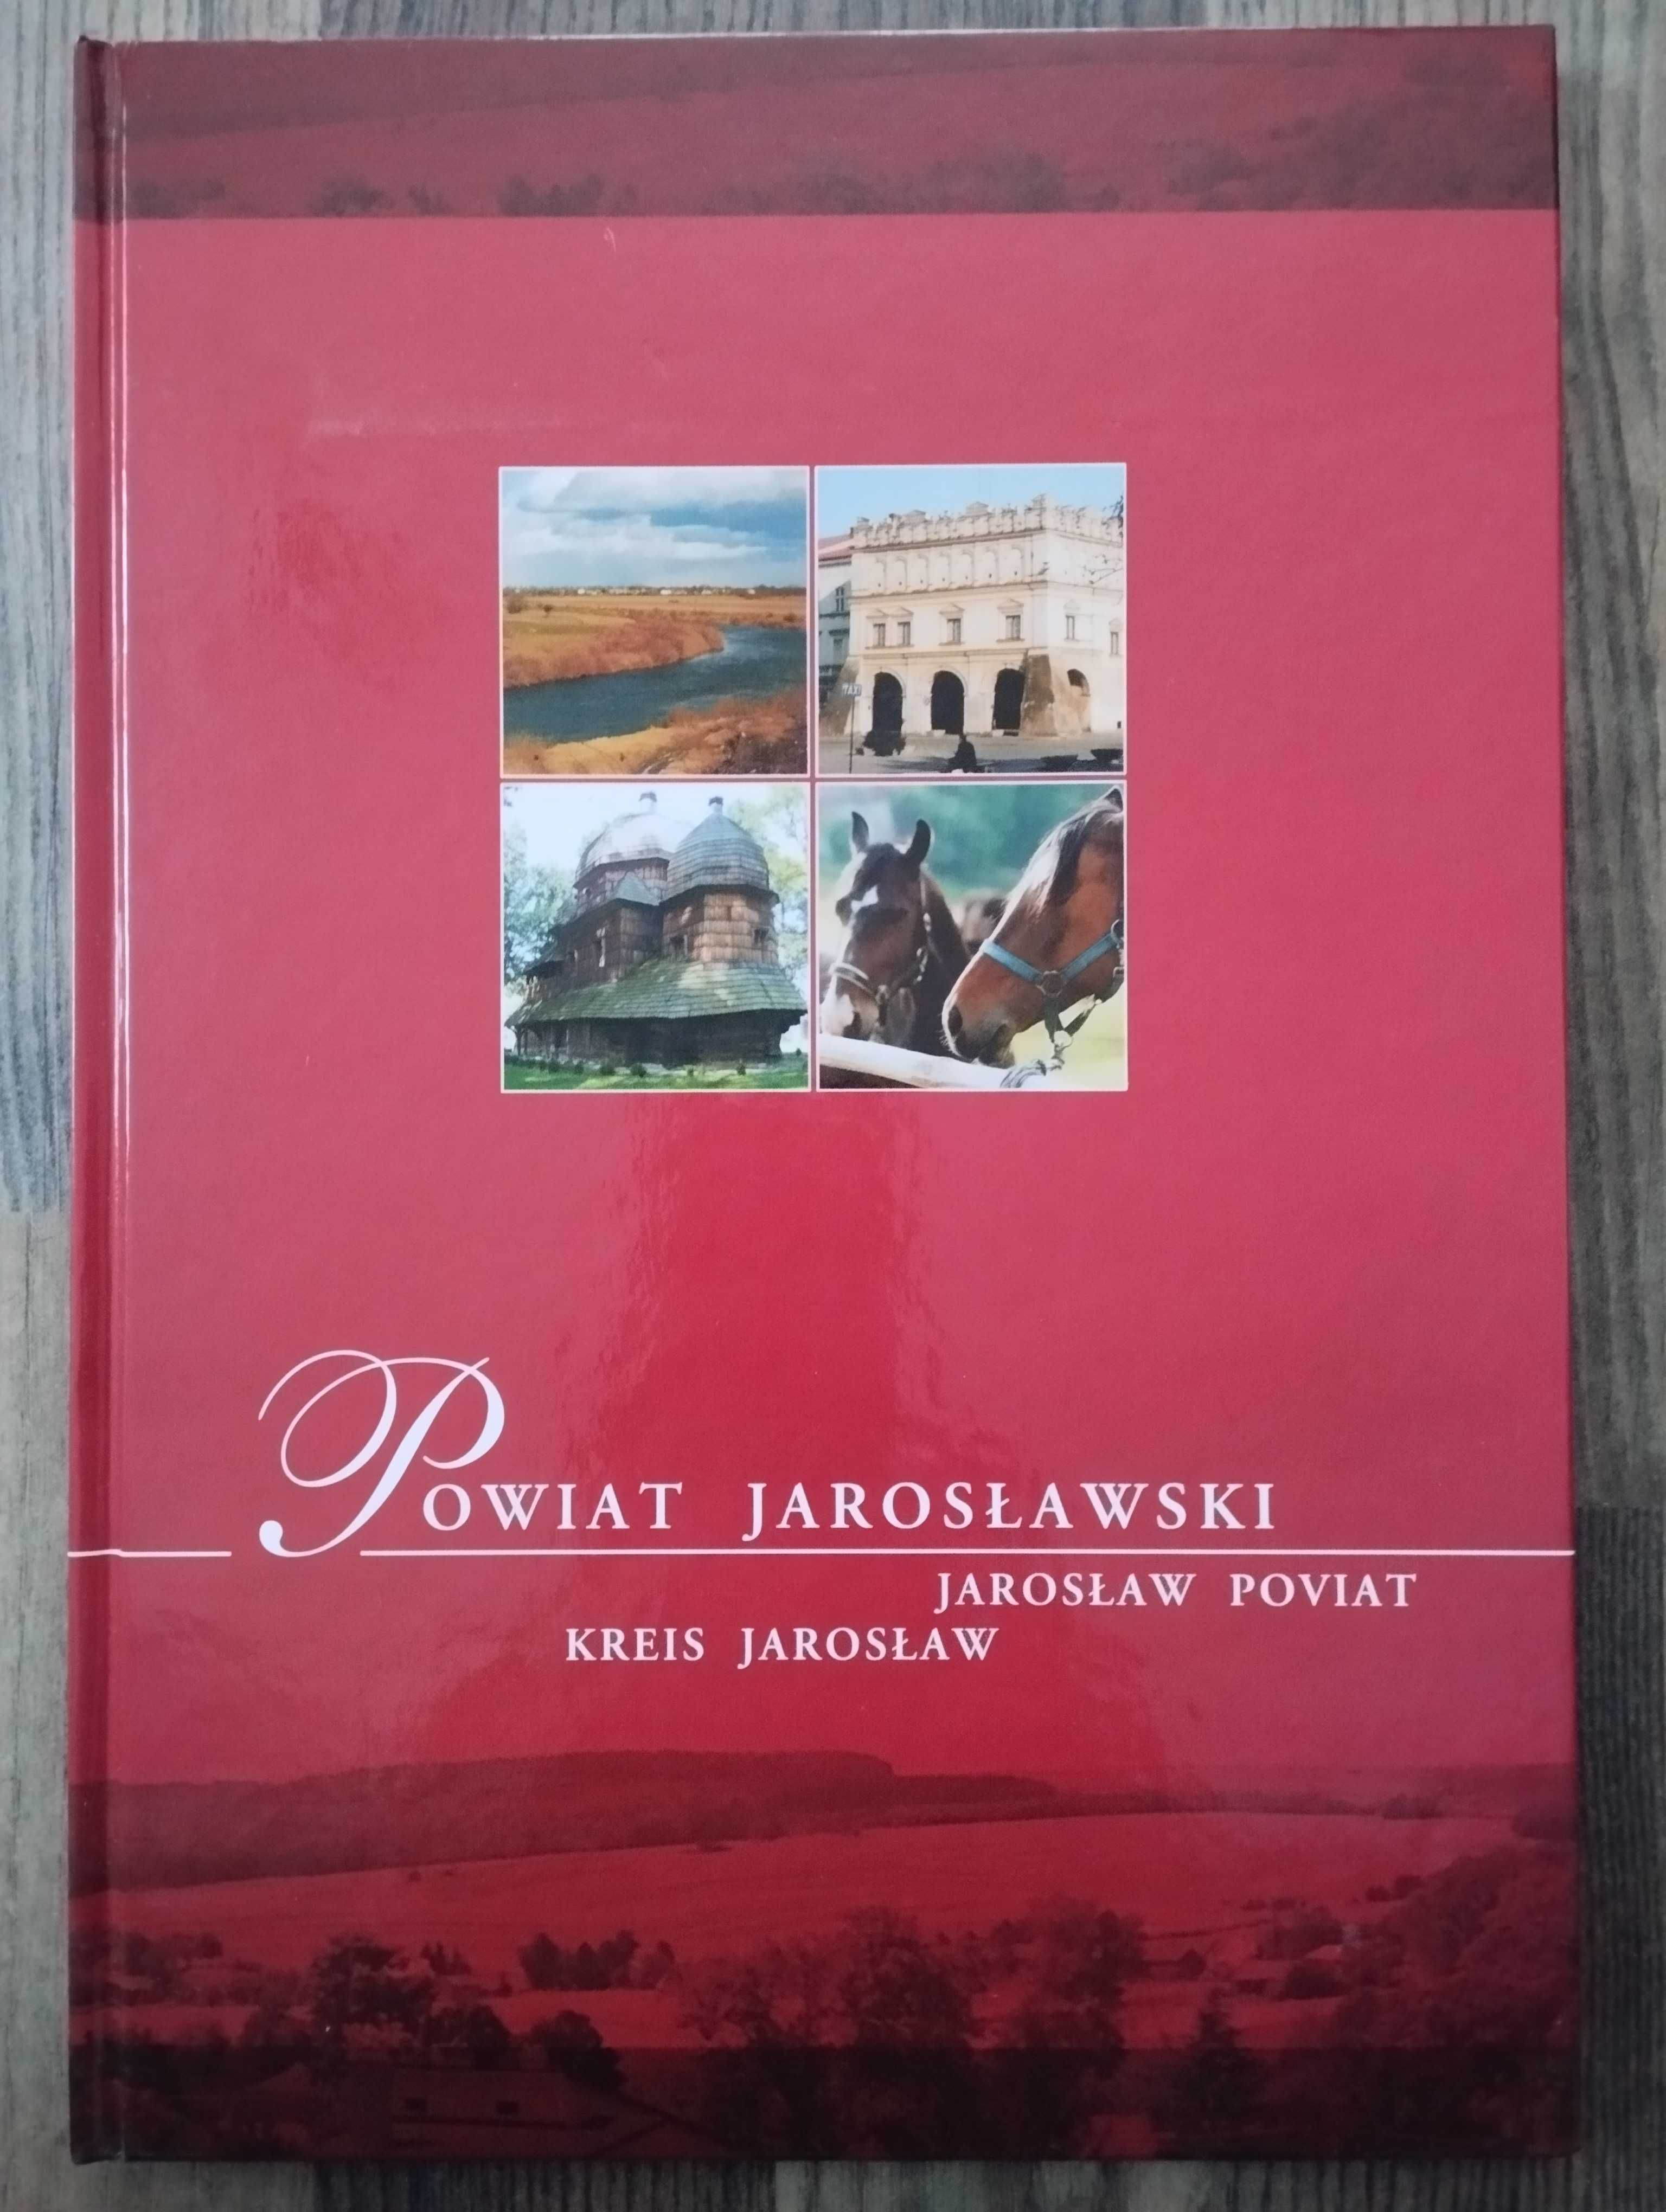 Powiat jarosławski album